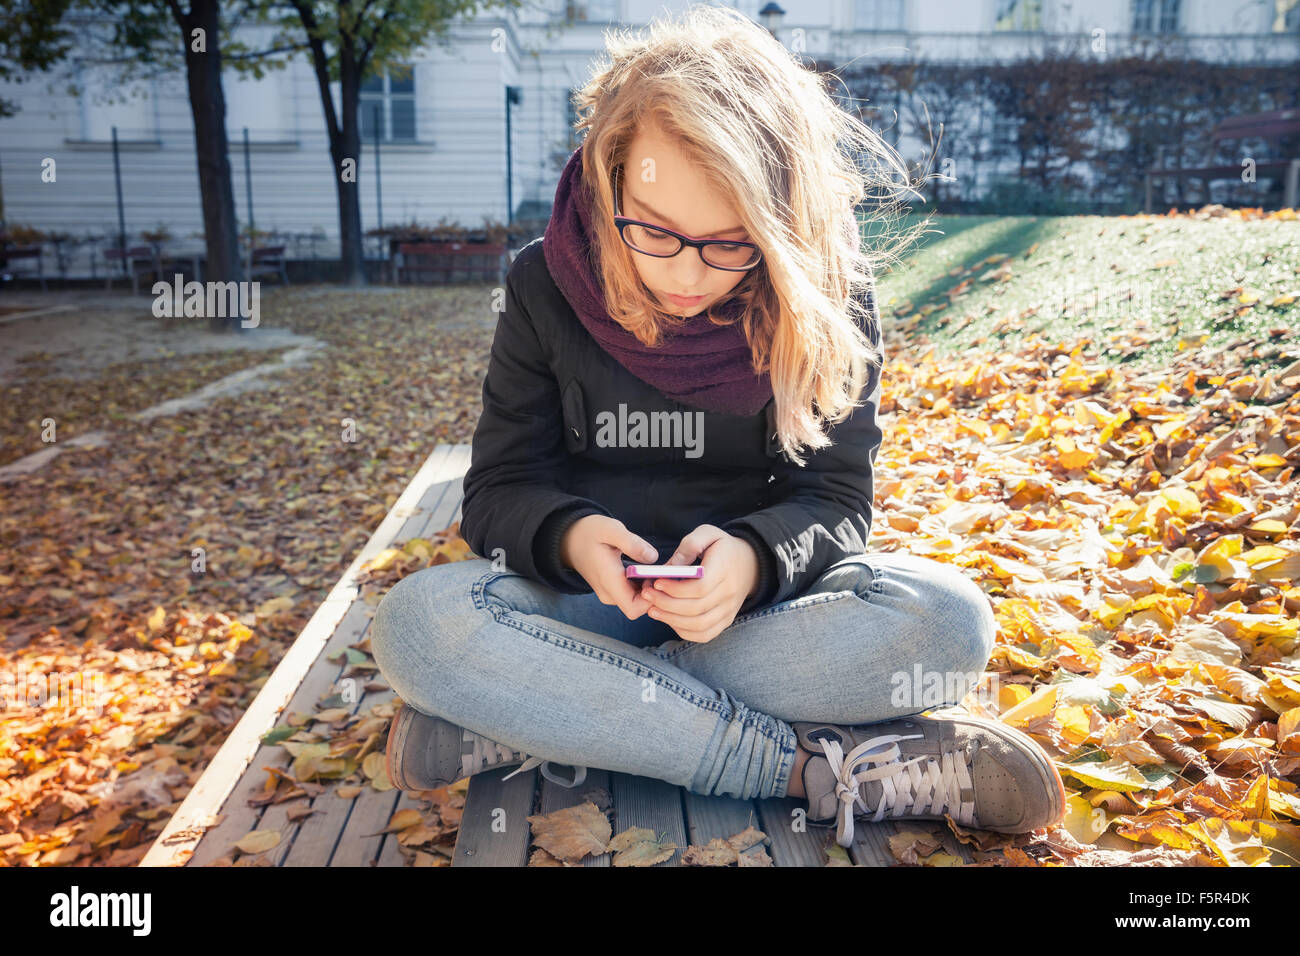 Carino bionda caucasica ragazza adolescente in jeans e giacca nera seduto su una panchina nel parco e utilizza lo smartphone, outdoor autunno ritratto Foto Stock